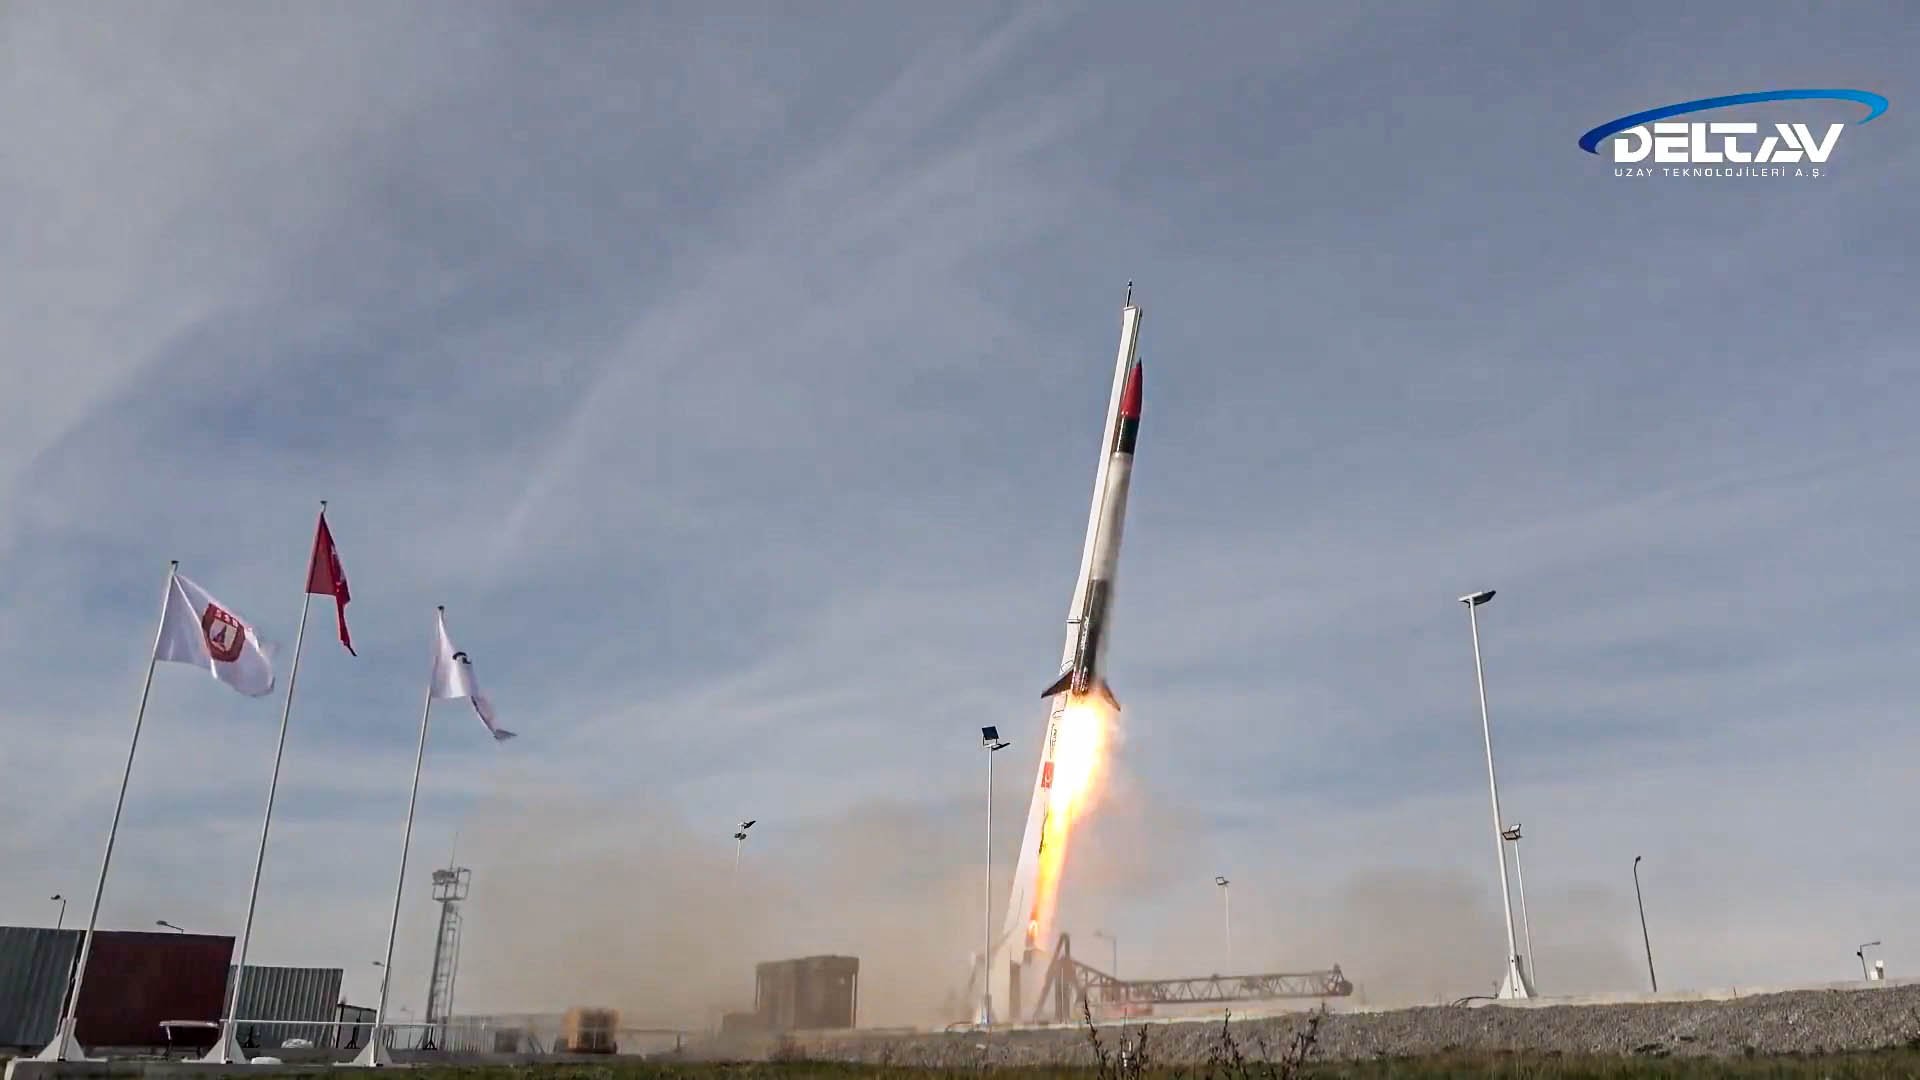 Hipersonik sınırı aşan hızlara ulaşabilen DeltaV Sonda Roket Sistemi |  DefenceTurk